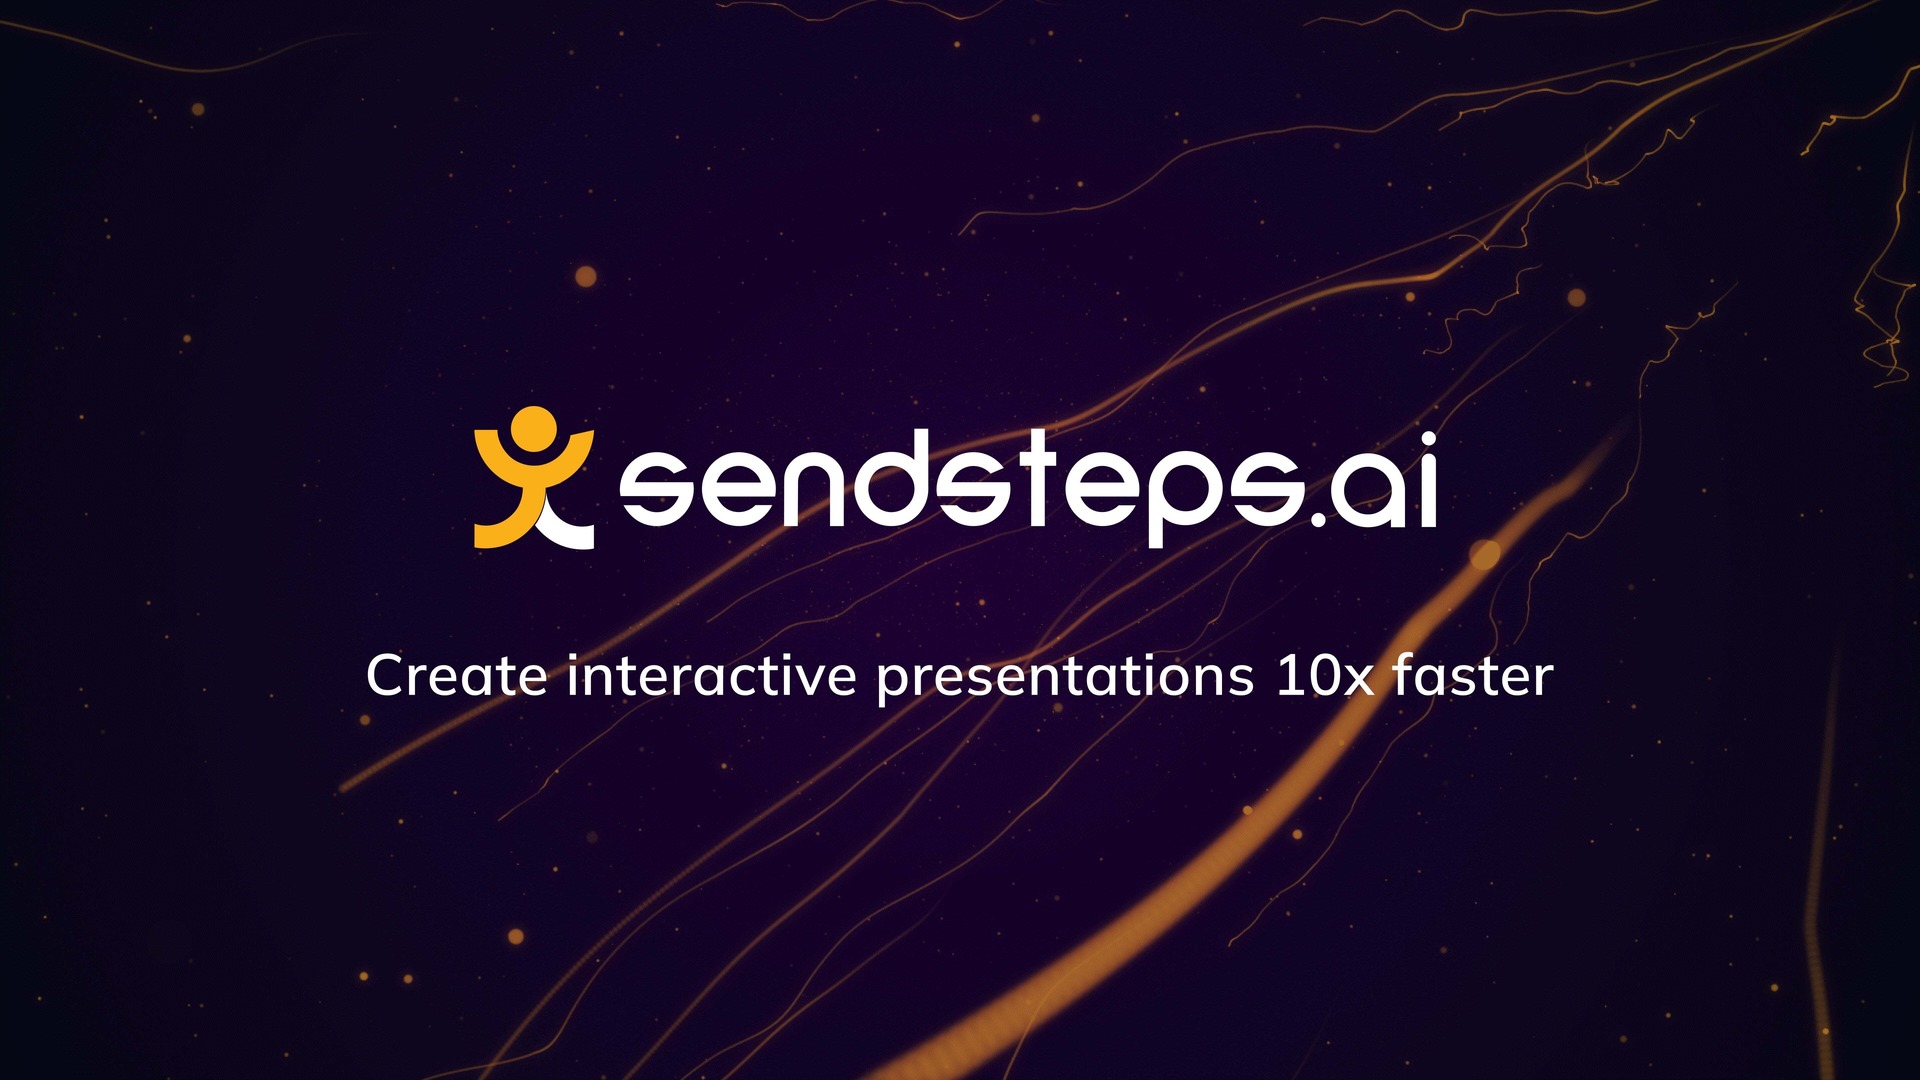 SendSteps.ai - Un outil pour créer des présentations interactives